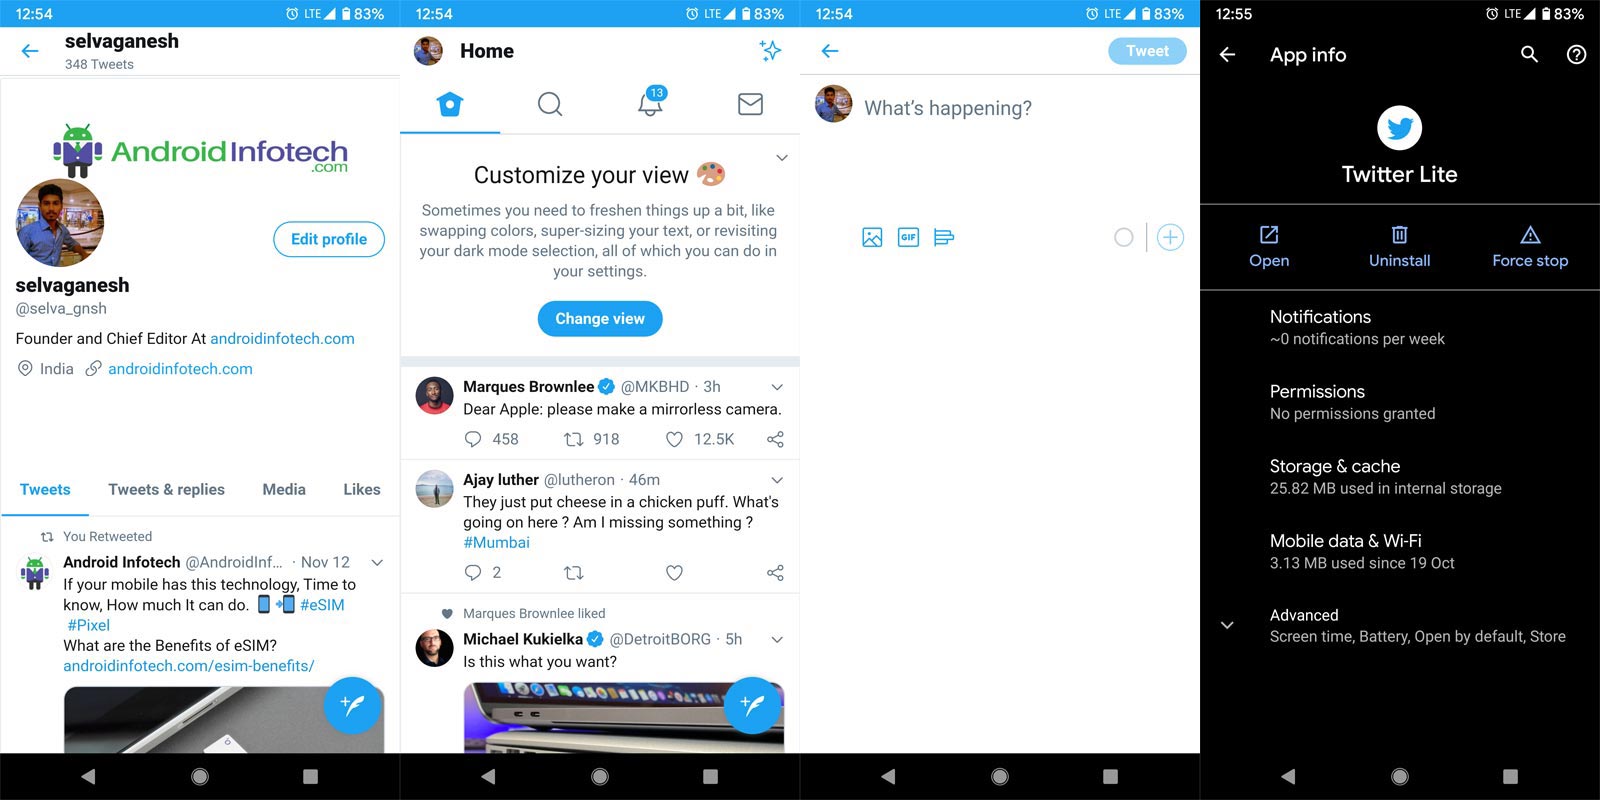 Twitter Lite App Screenshots